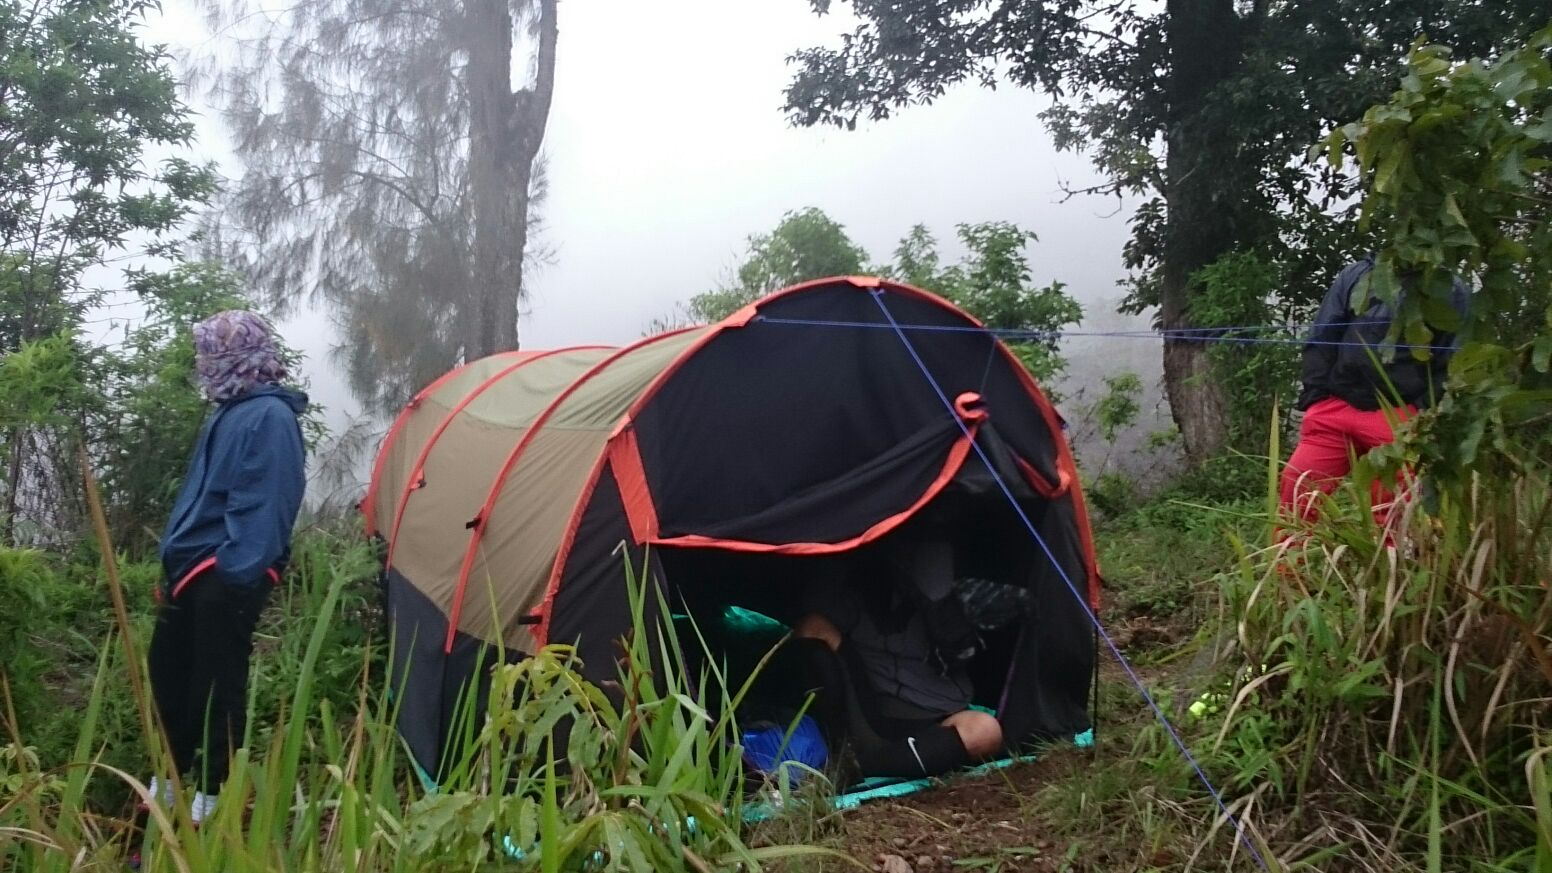 Tempat Rental Tenda Camping  Kapasitas 8 Orang Di Sidoarjo 